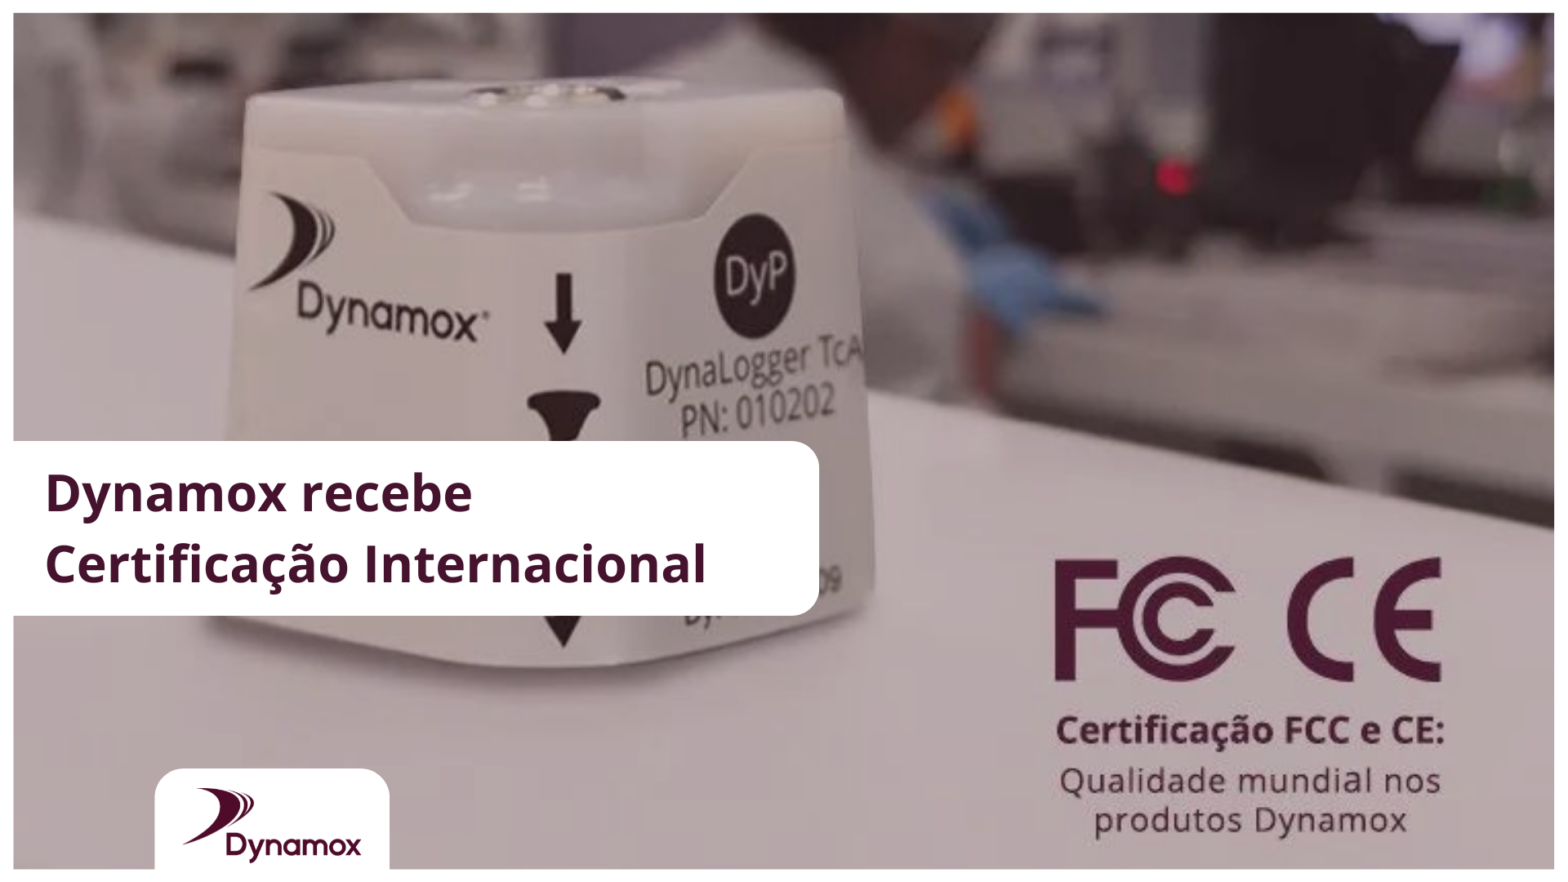 Dynamox recebe Certificação Internacional